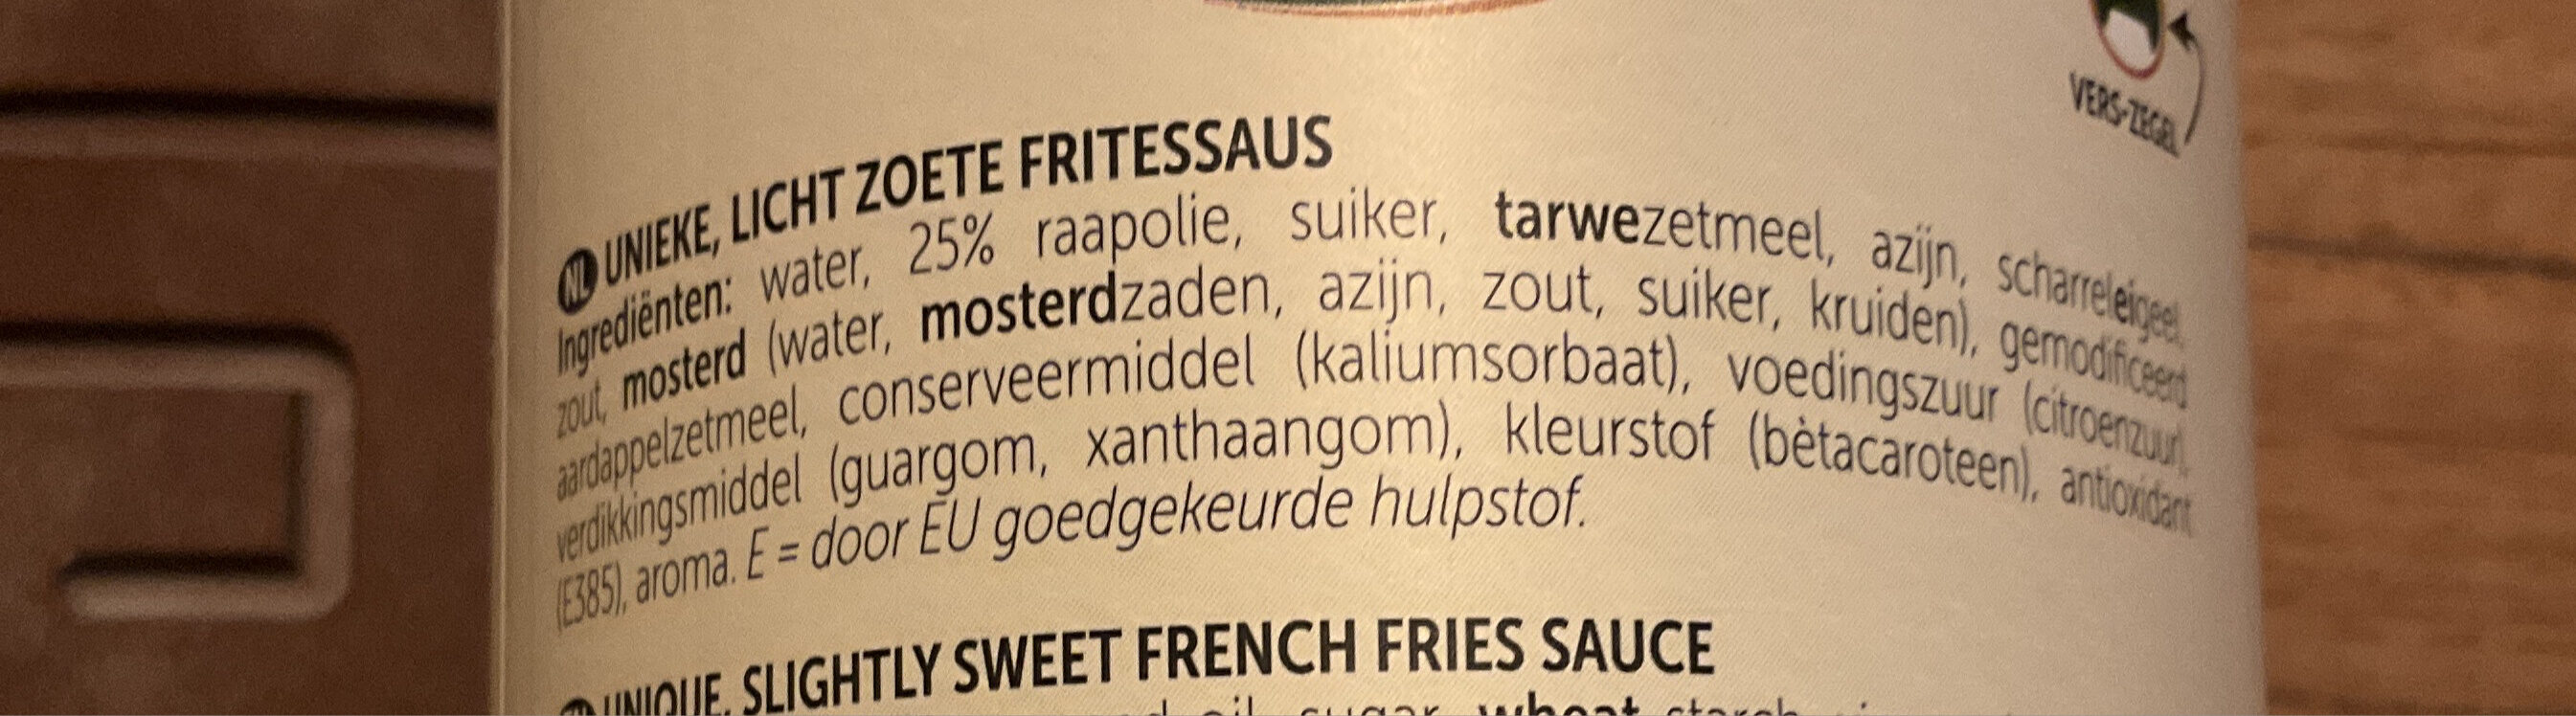 Oliehoorn Fritessaus - Zutaten - nl